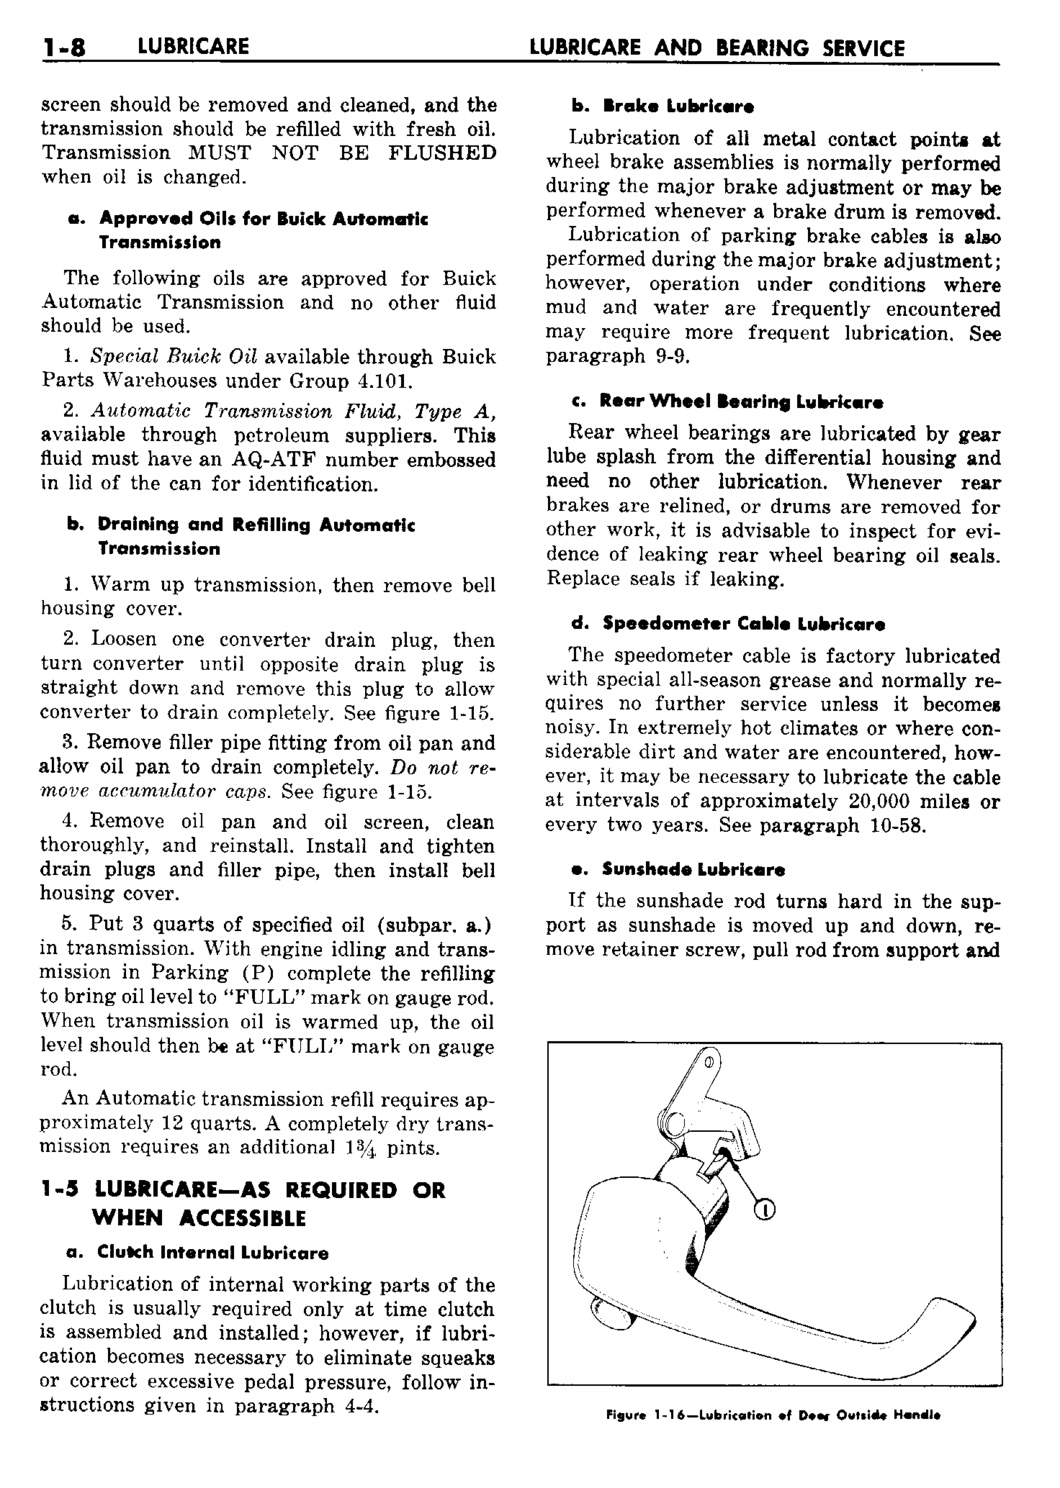 n_02 1960 Buick Shop Manual - Lubricare-008-008.jpg